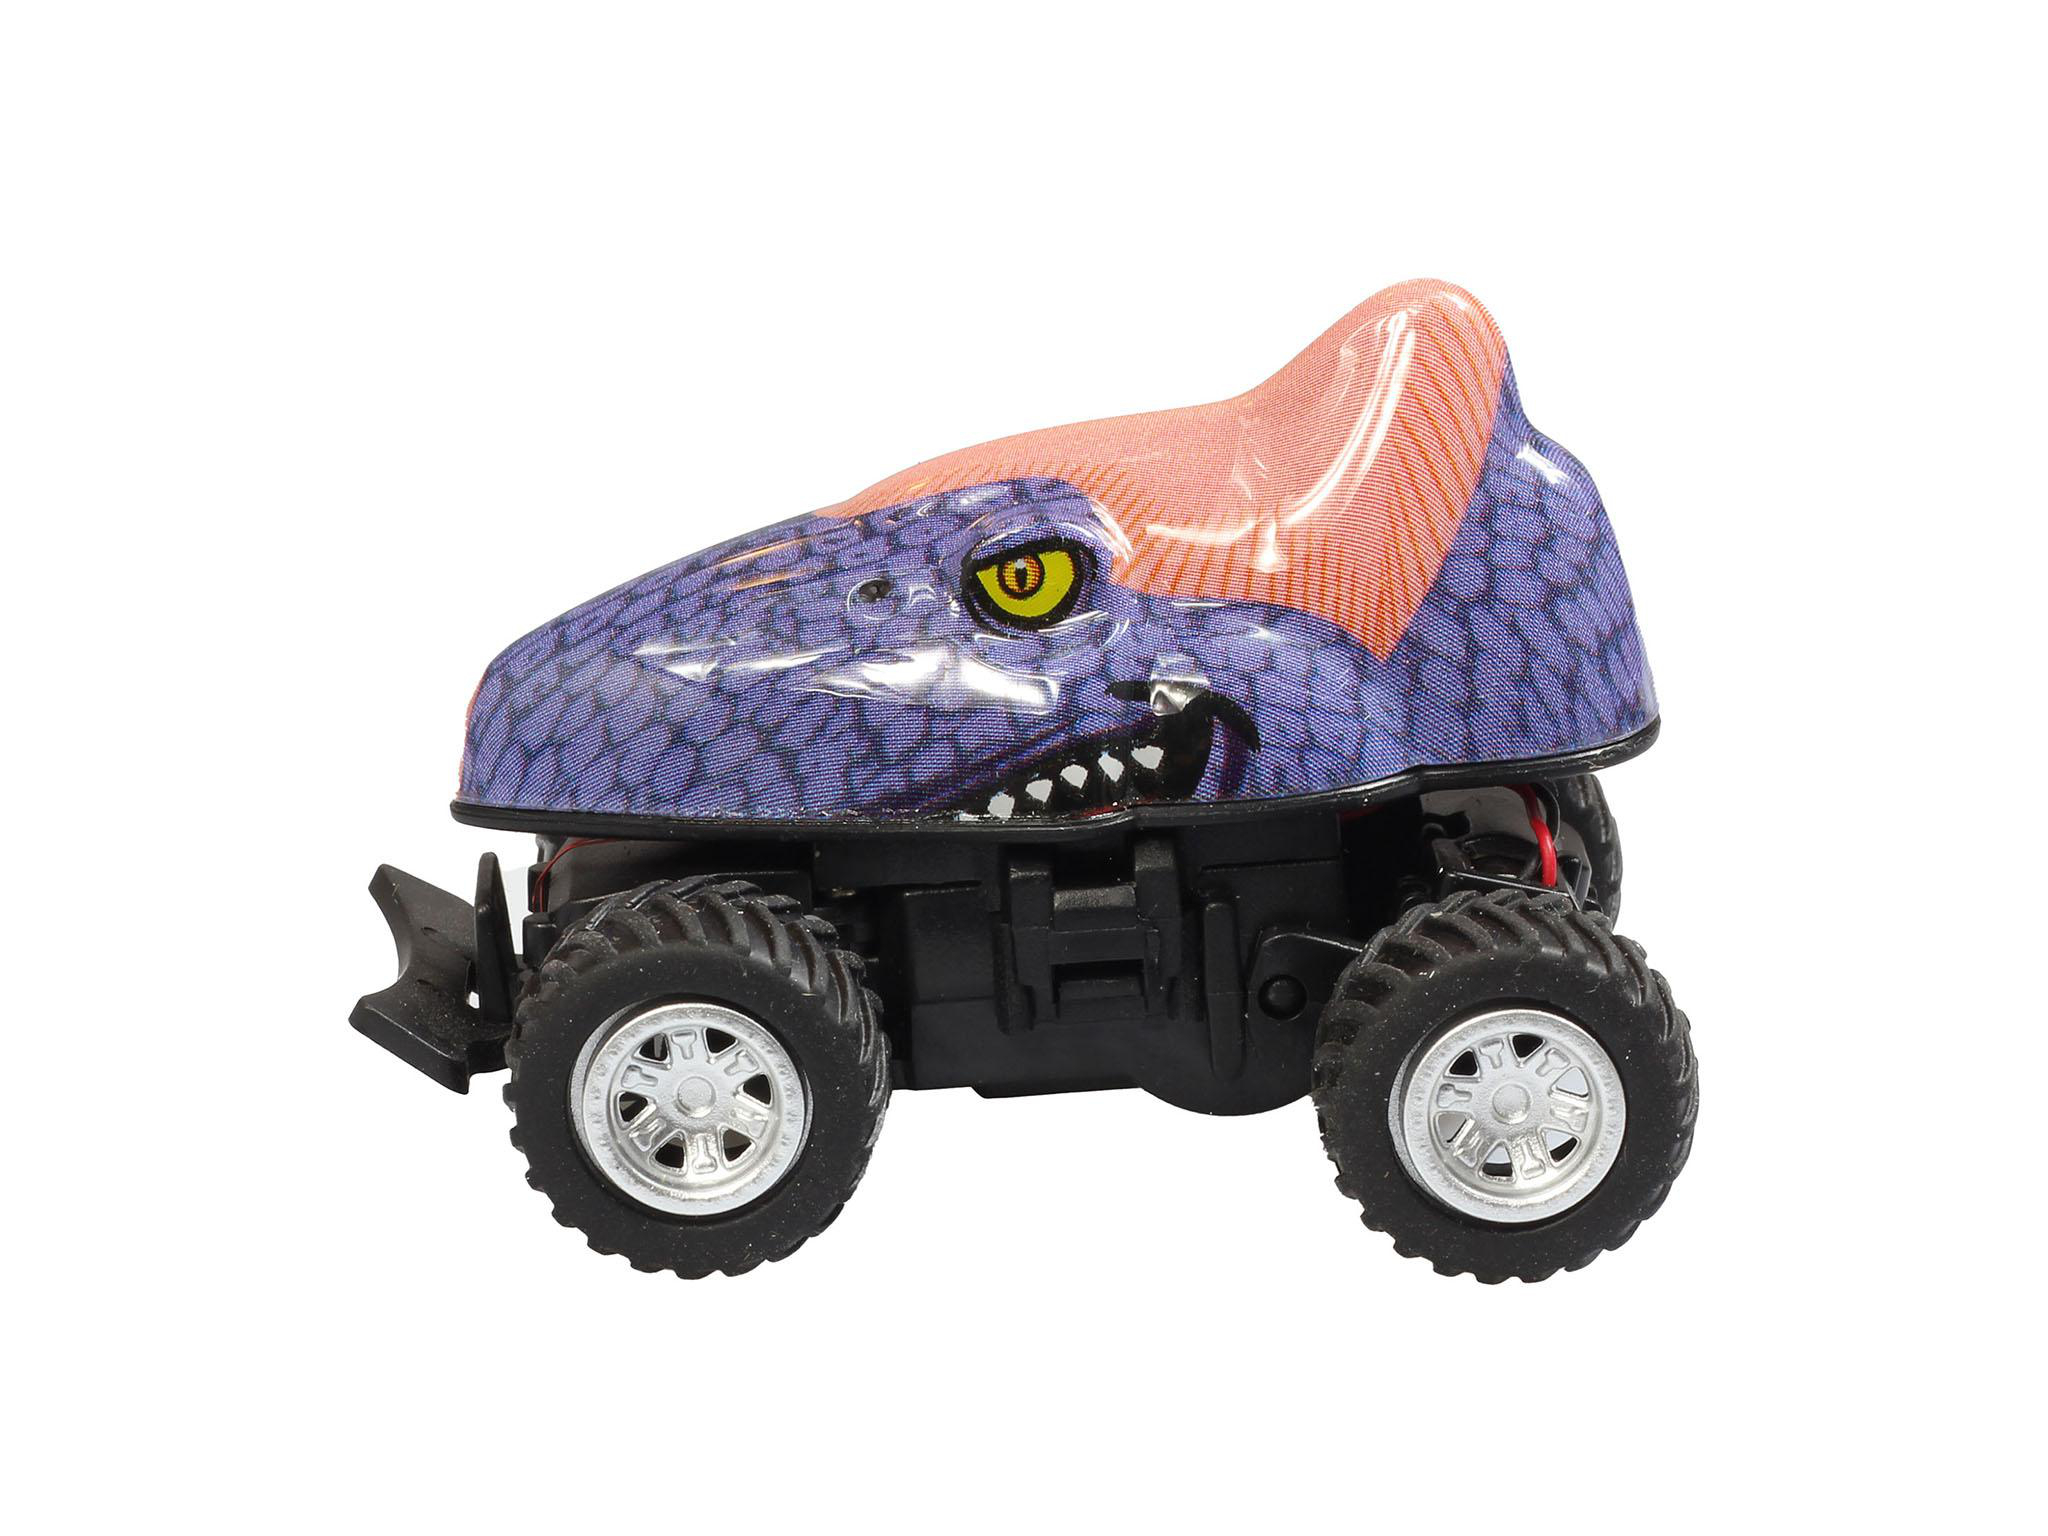 Mini Mehfarbig R/C Dino REVELL Quetzalcoatlus RC Spielzeugfigur,